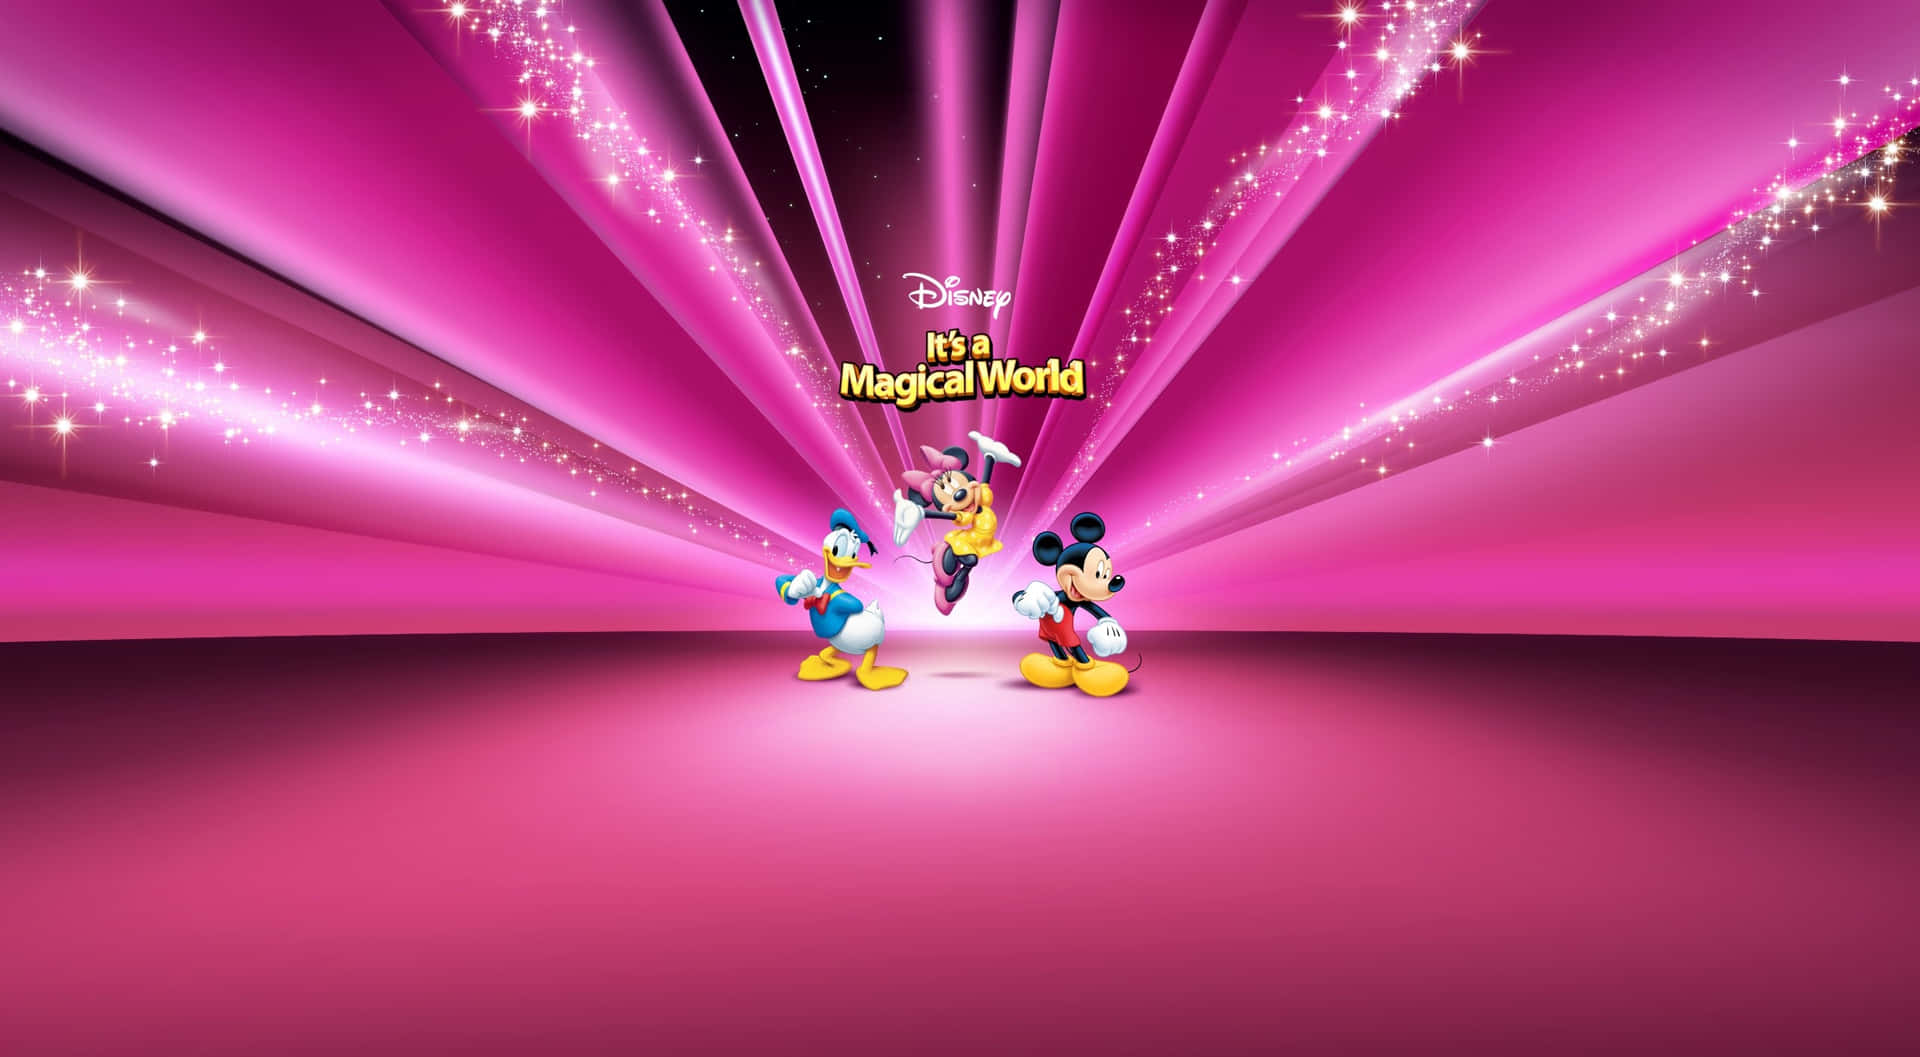 Fondode Pantalla De Disney De Mickey, Minnie Y Donald En 1440p.